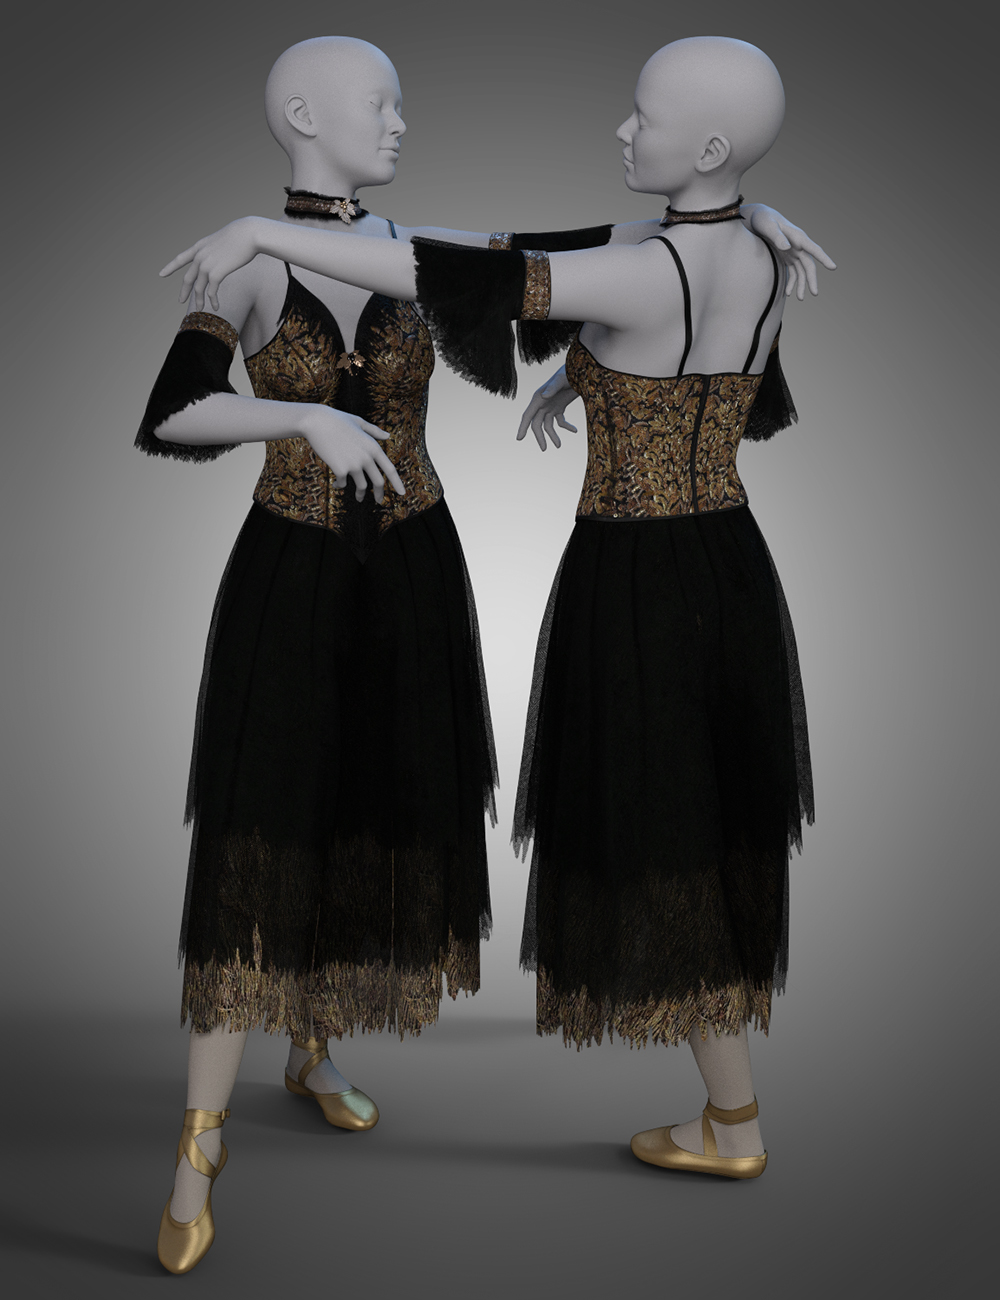 dForce Ballet Dreams Textures by: Shox-Design, 3D Models by Daz 3D